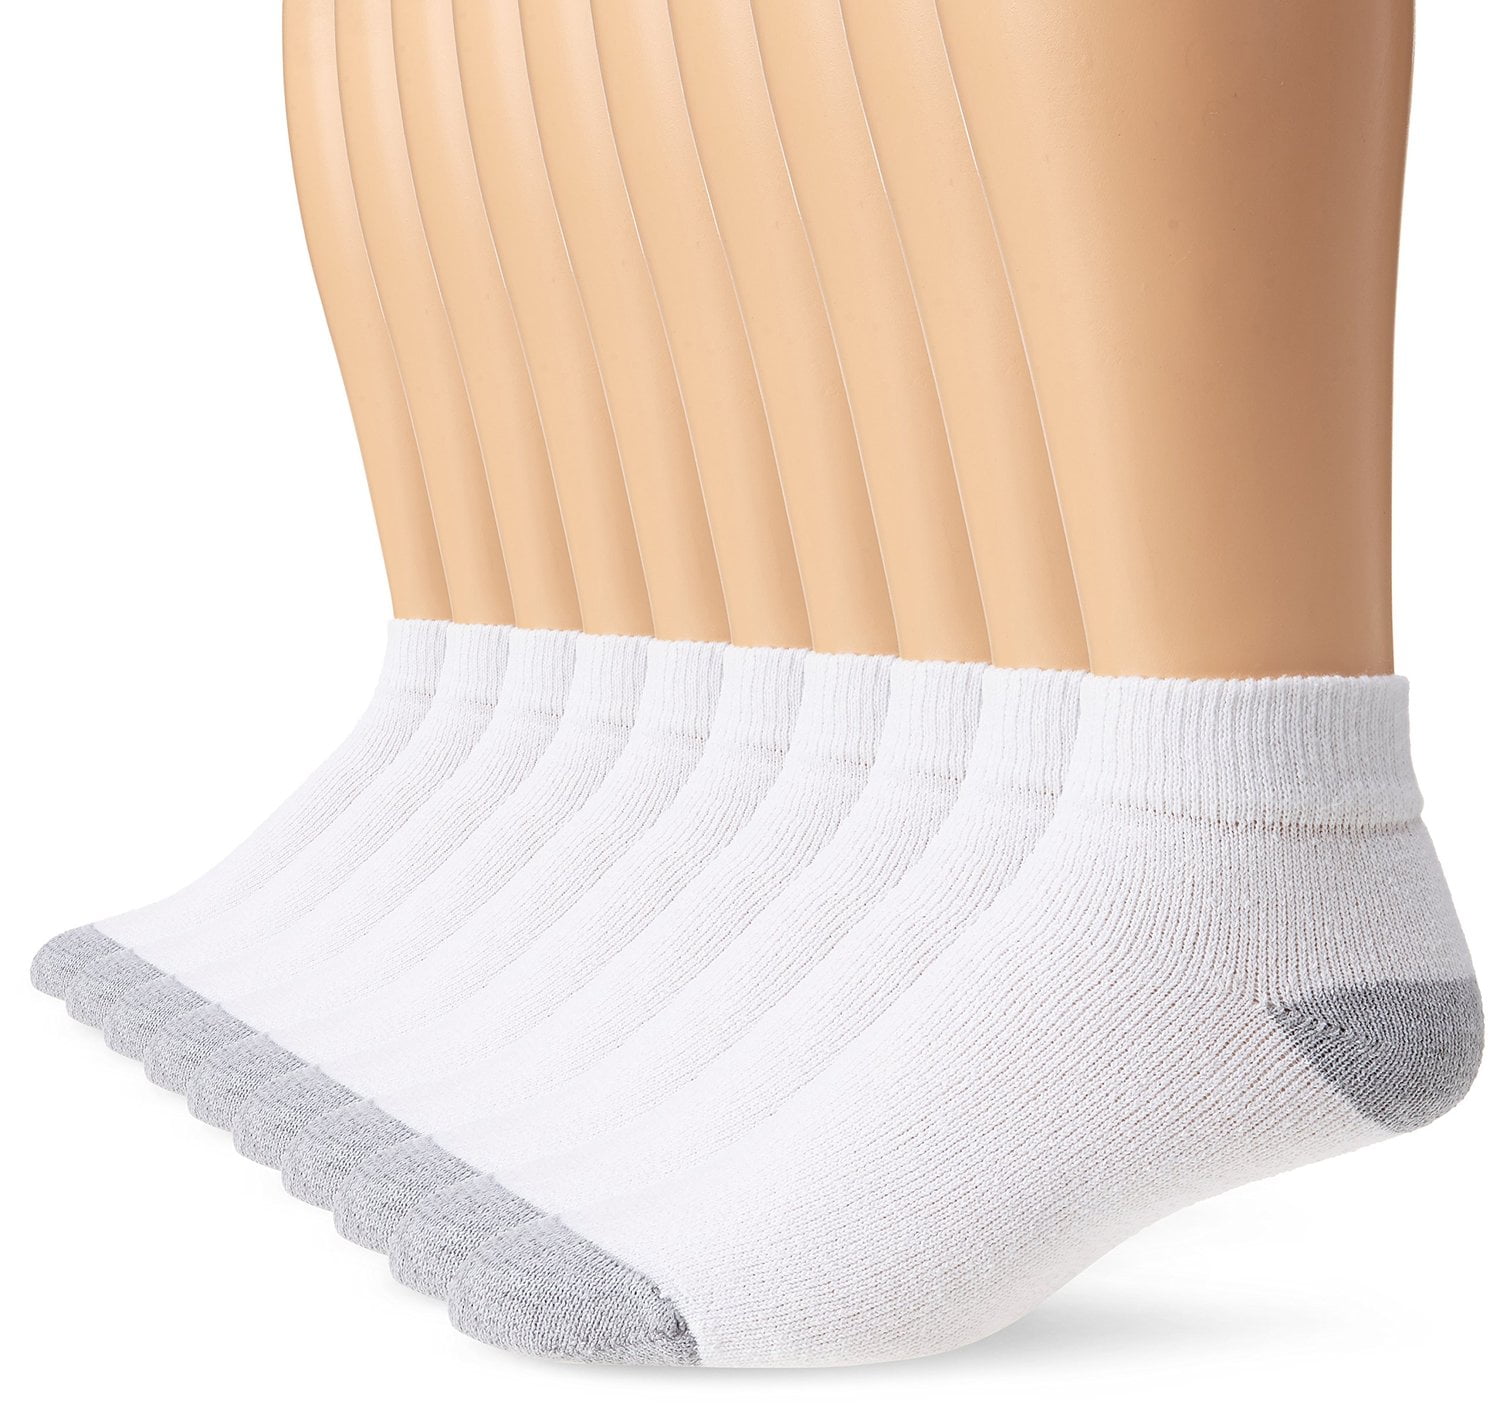 Men's Ankle Socks, 10 Pack - Walmart.com